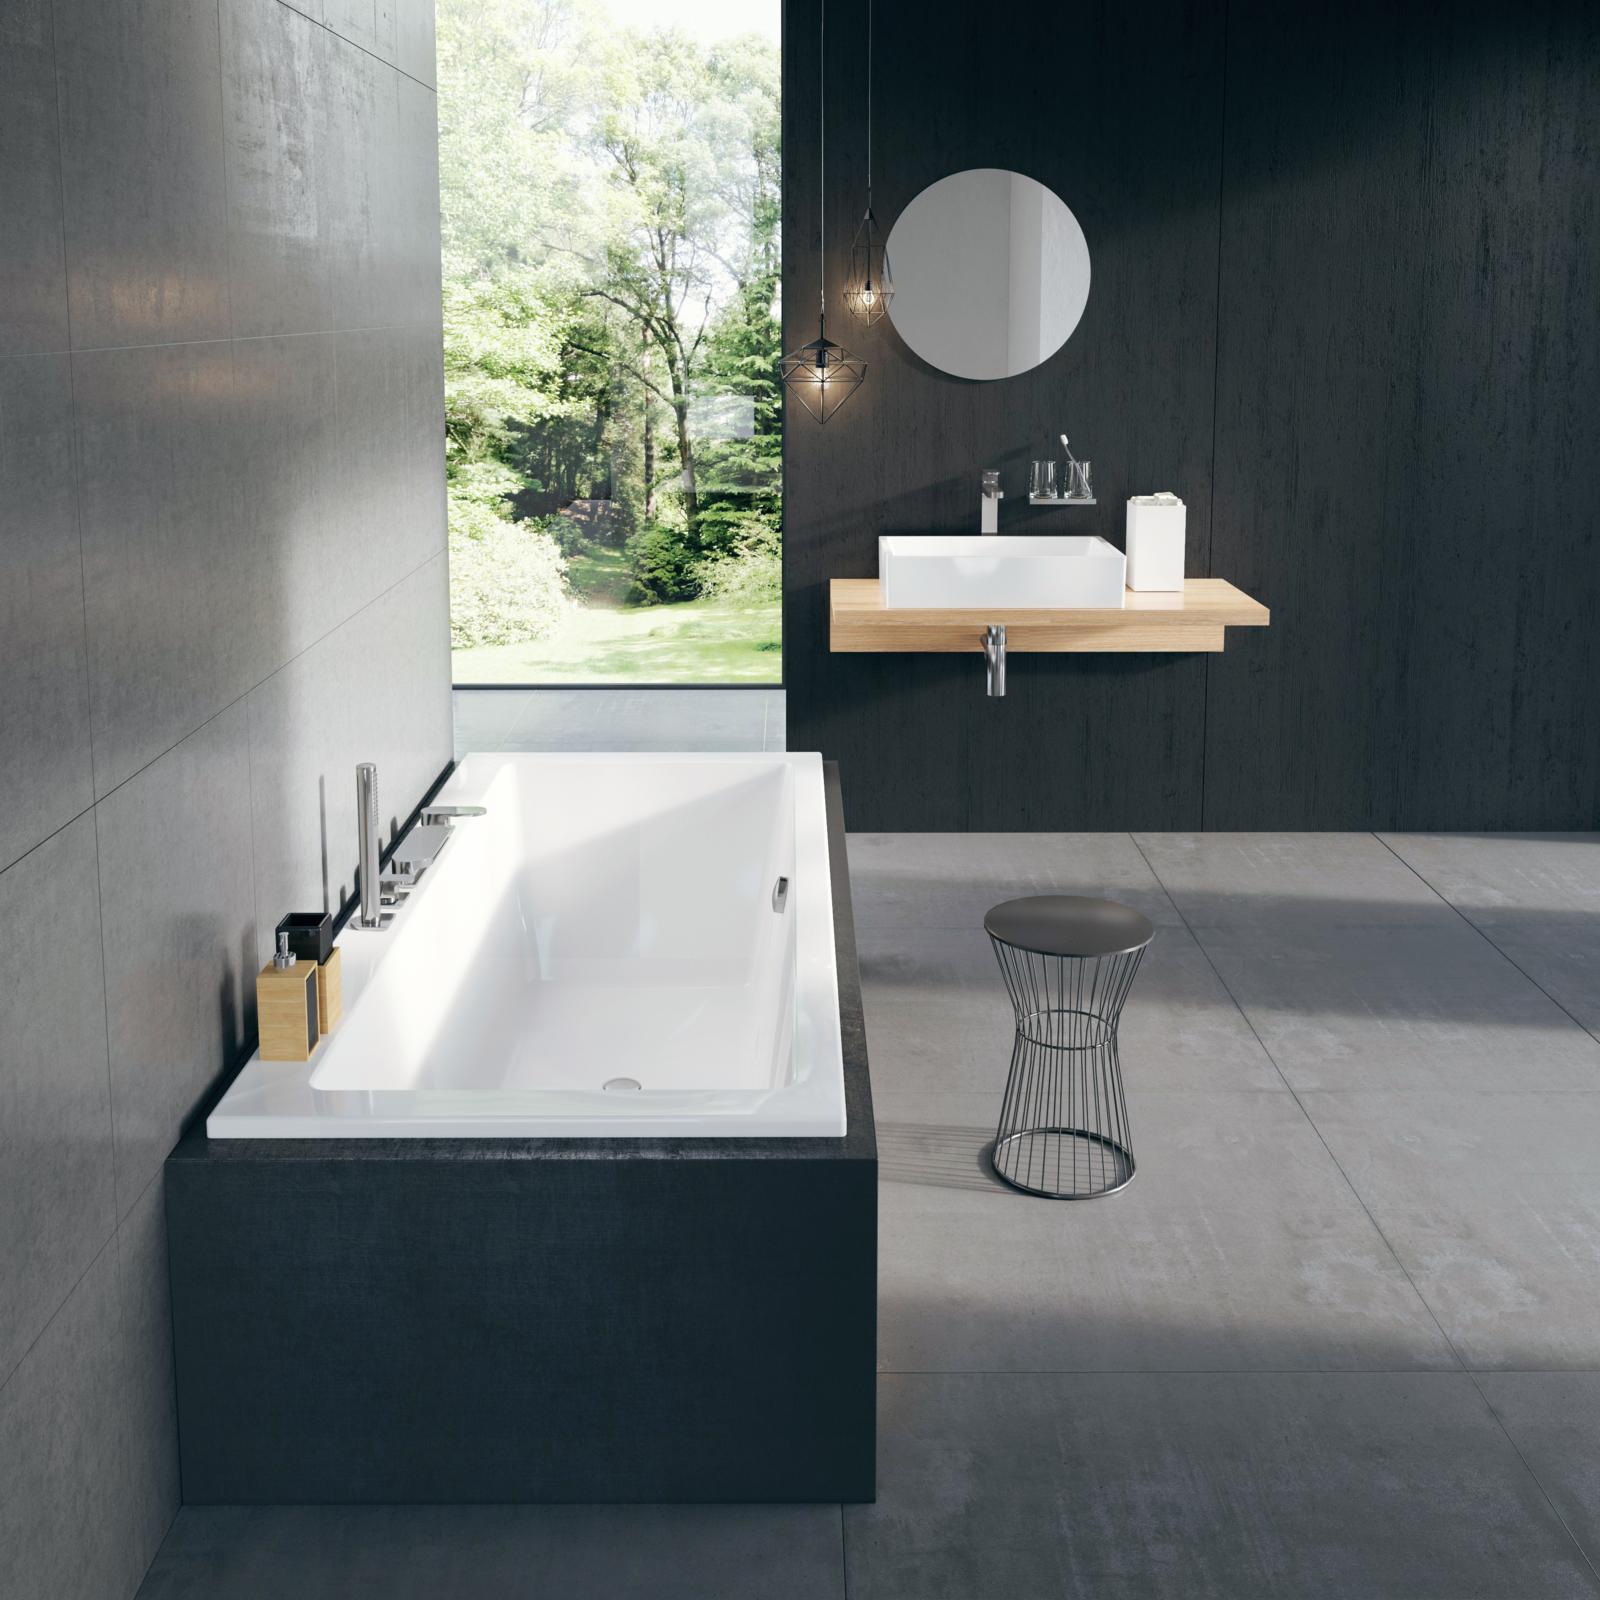 A Formy 01 kád a RAVAK egyik legkedveltebb minimalista stílusú kádja. A hozzá illő mosdó és mosdópult nagyon harmonikus, letisztult megjelentést garantál.